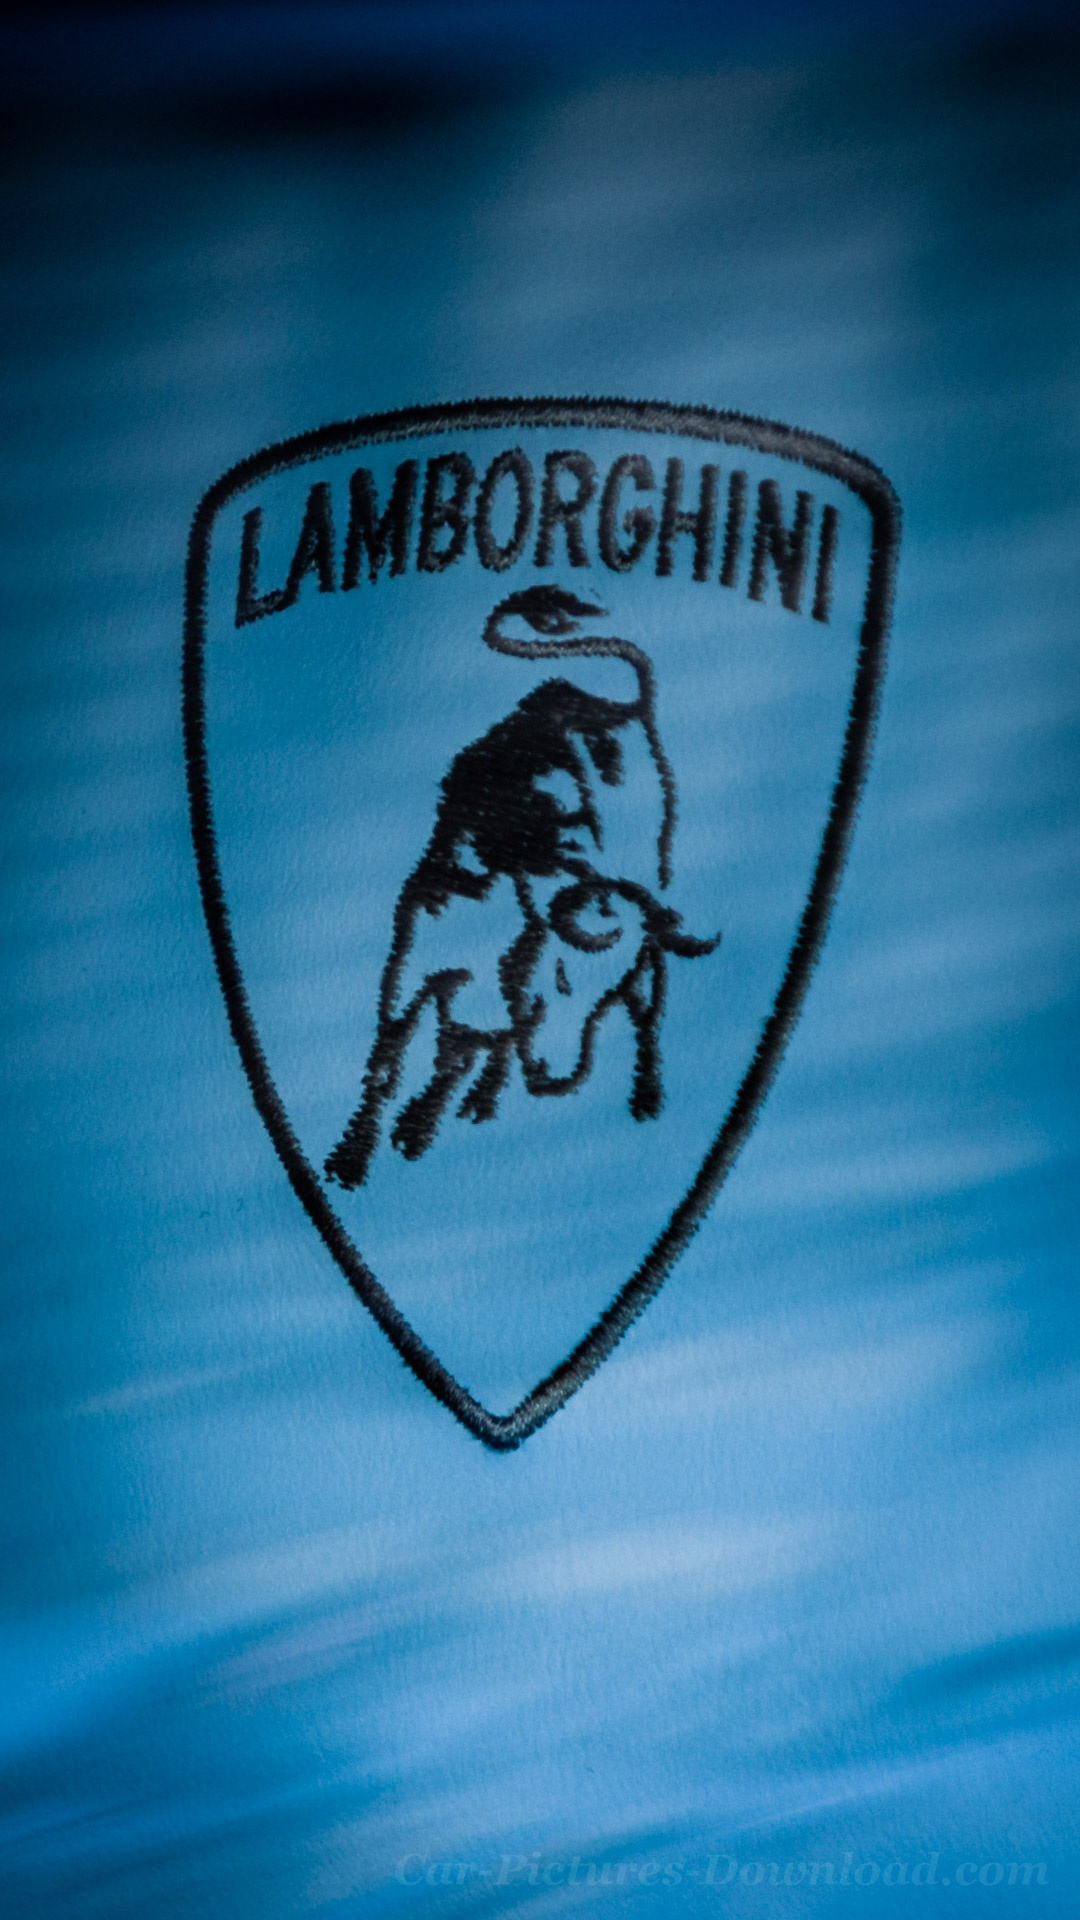 Lamborghini Logo, iPhone wallpapers, Mobile phones, Free download, 1080x1920 Full HD Phone